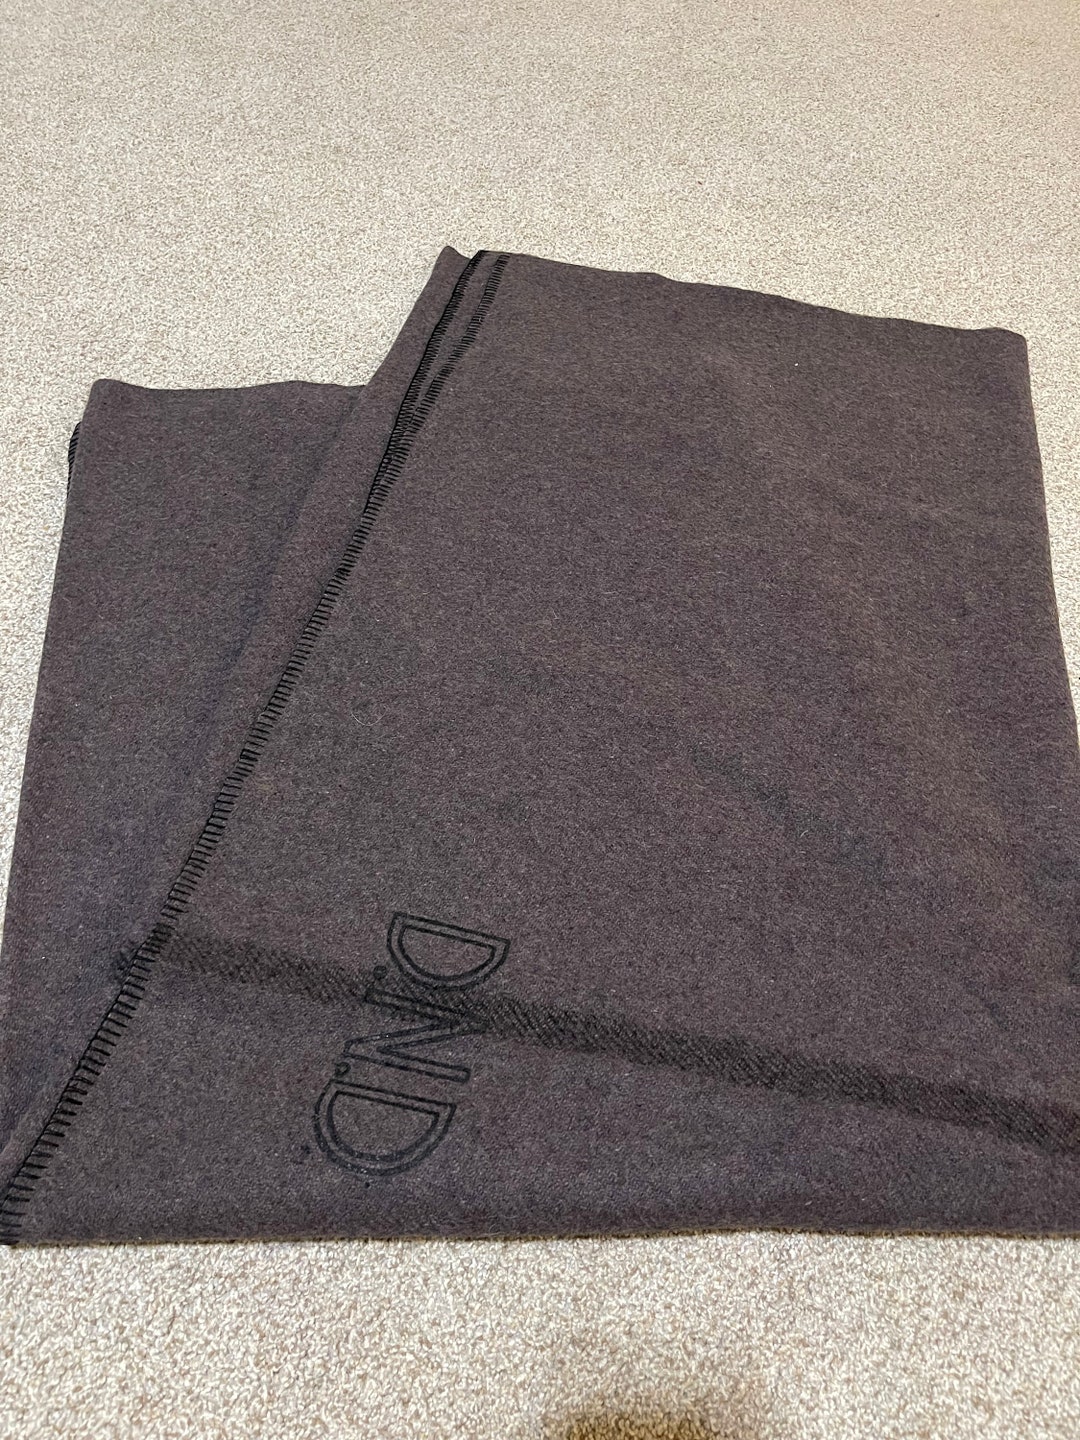 1950s Vintage Canadian Civil Defense Wool Blanket Brand New. - Etsy